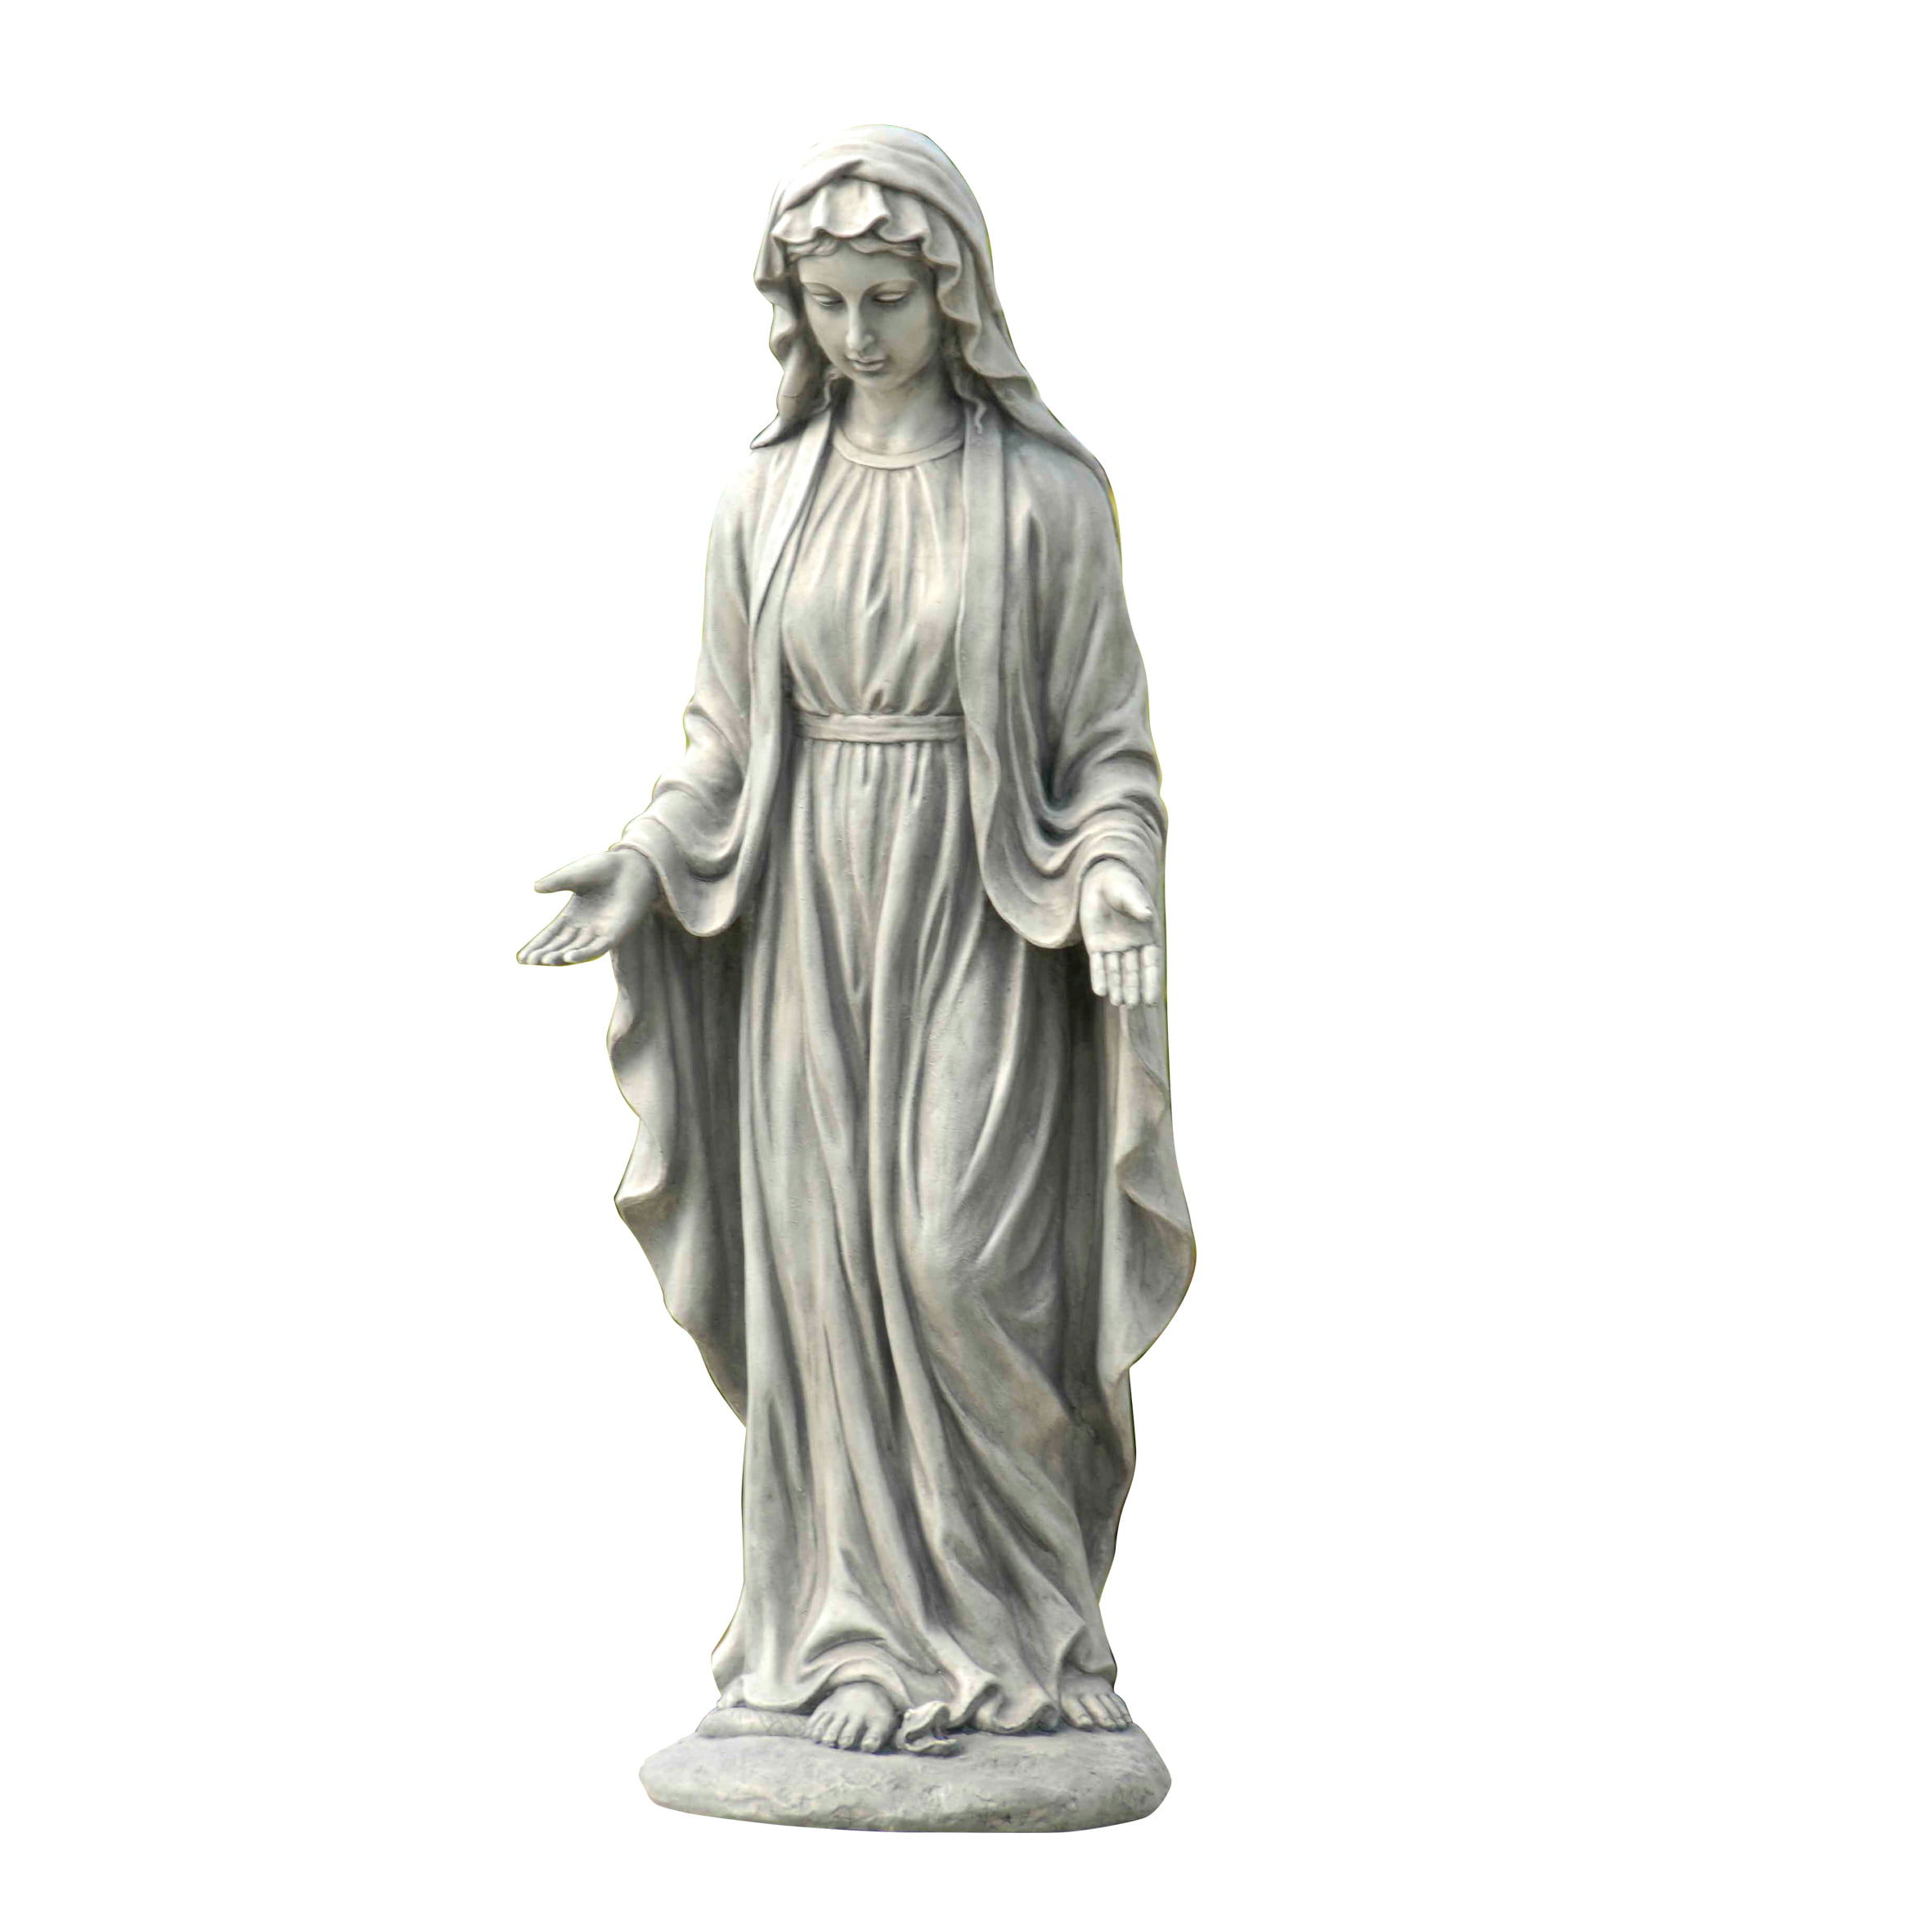 HUGE VIRGIN MARY Figurine Deluxe 19-1/2" HIGH 8" WIDE INDOOR/OUTDOOR STATUE NEW 